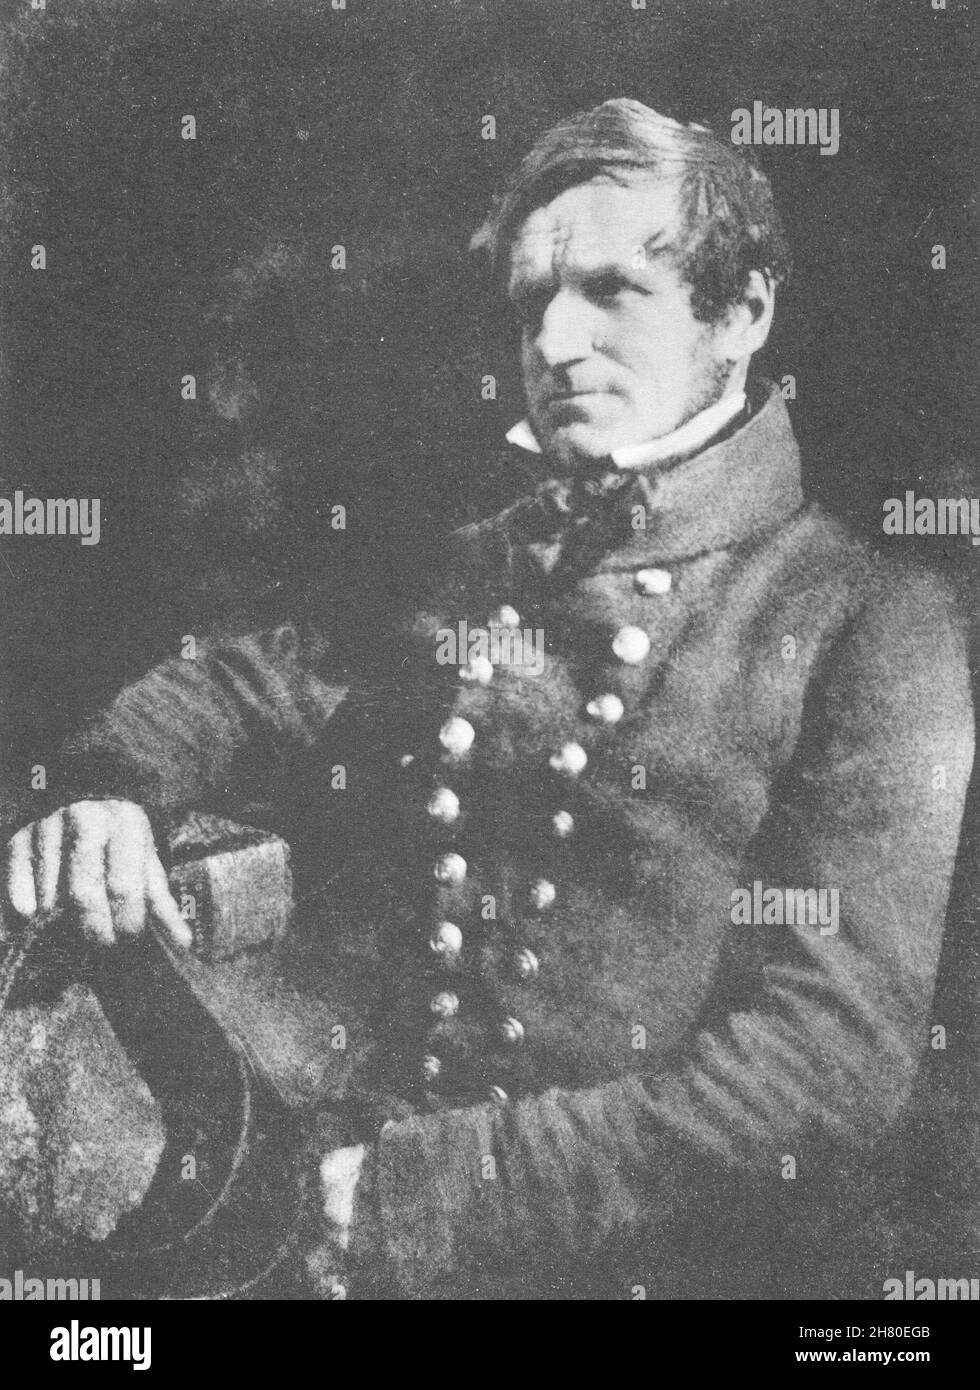 RETRATOS. Retrato de un infantryman francés, 1850 1935- 1845 de la vieja impresión de la vendimia Foto de stock